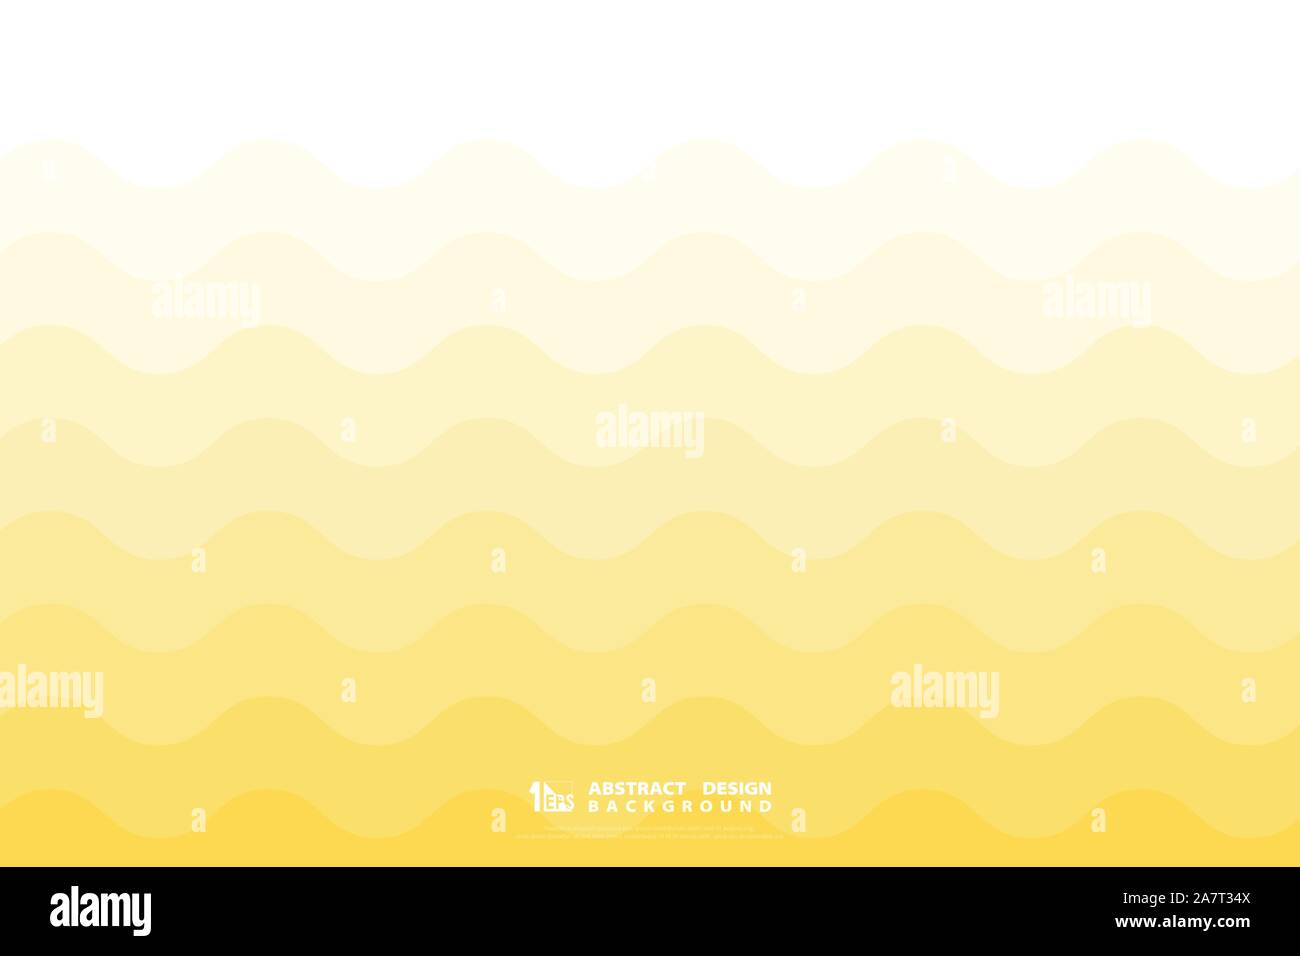 Résumé de conception minimale ondulées jaune lisse simple arrière-plan de l'oeuvre. Modèle de présentation pour décorer, ad, affiche, conception de l'oeuvre, rapport. Illustration de Vecteur